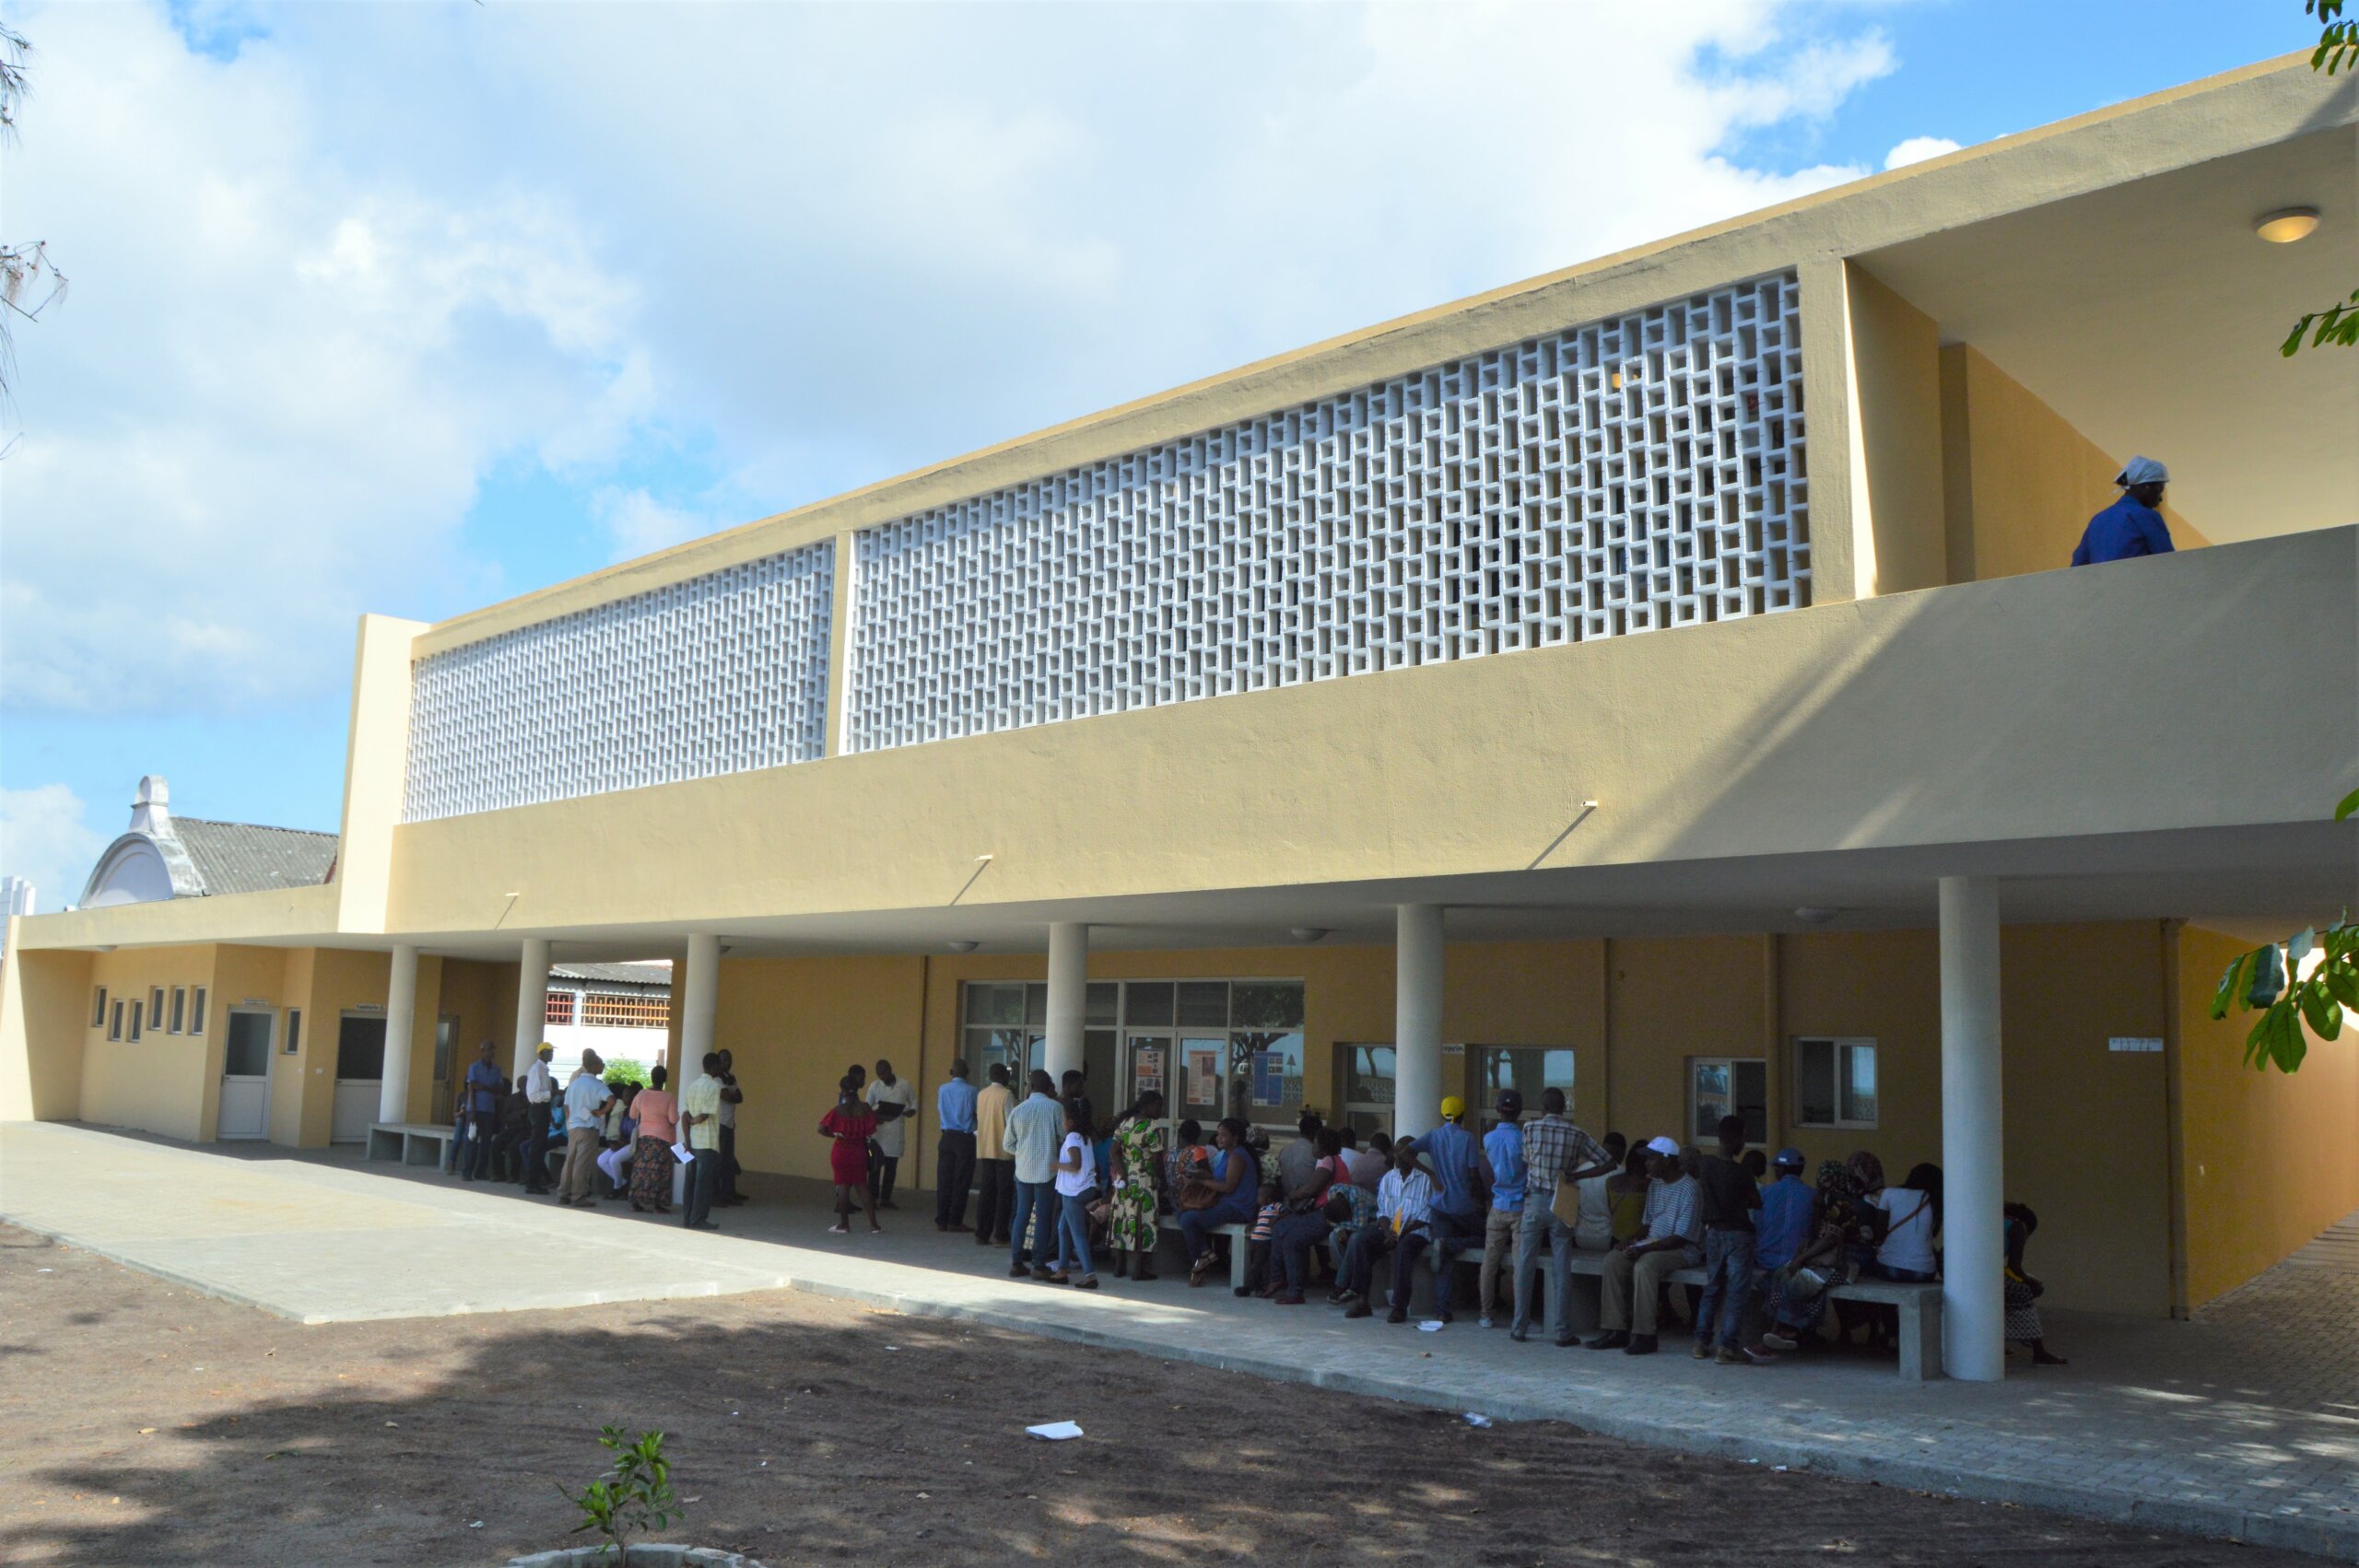 Auf dem Foto ist die Augenklinik in Beira, Mosambik zu sehen. Es ist ein gelbes Gebäude vor dem zahlreiche Menschen sitzen.